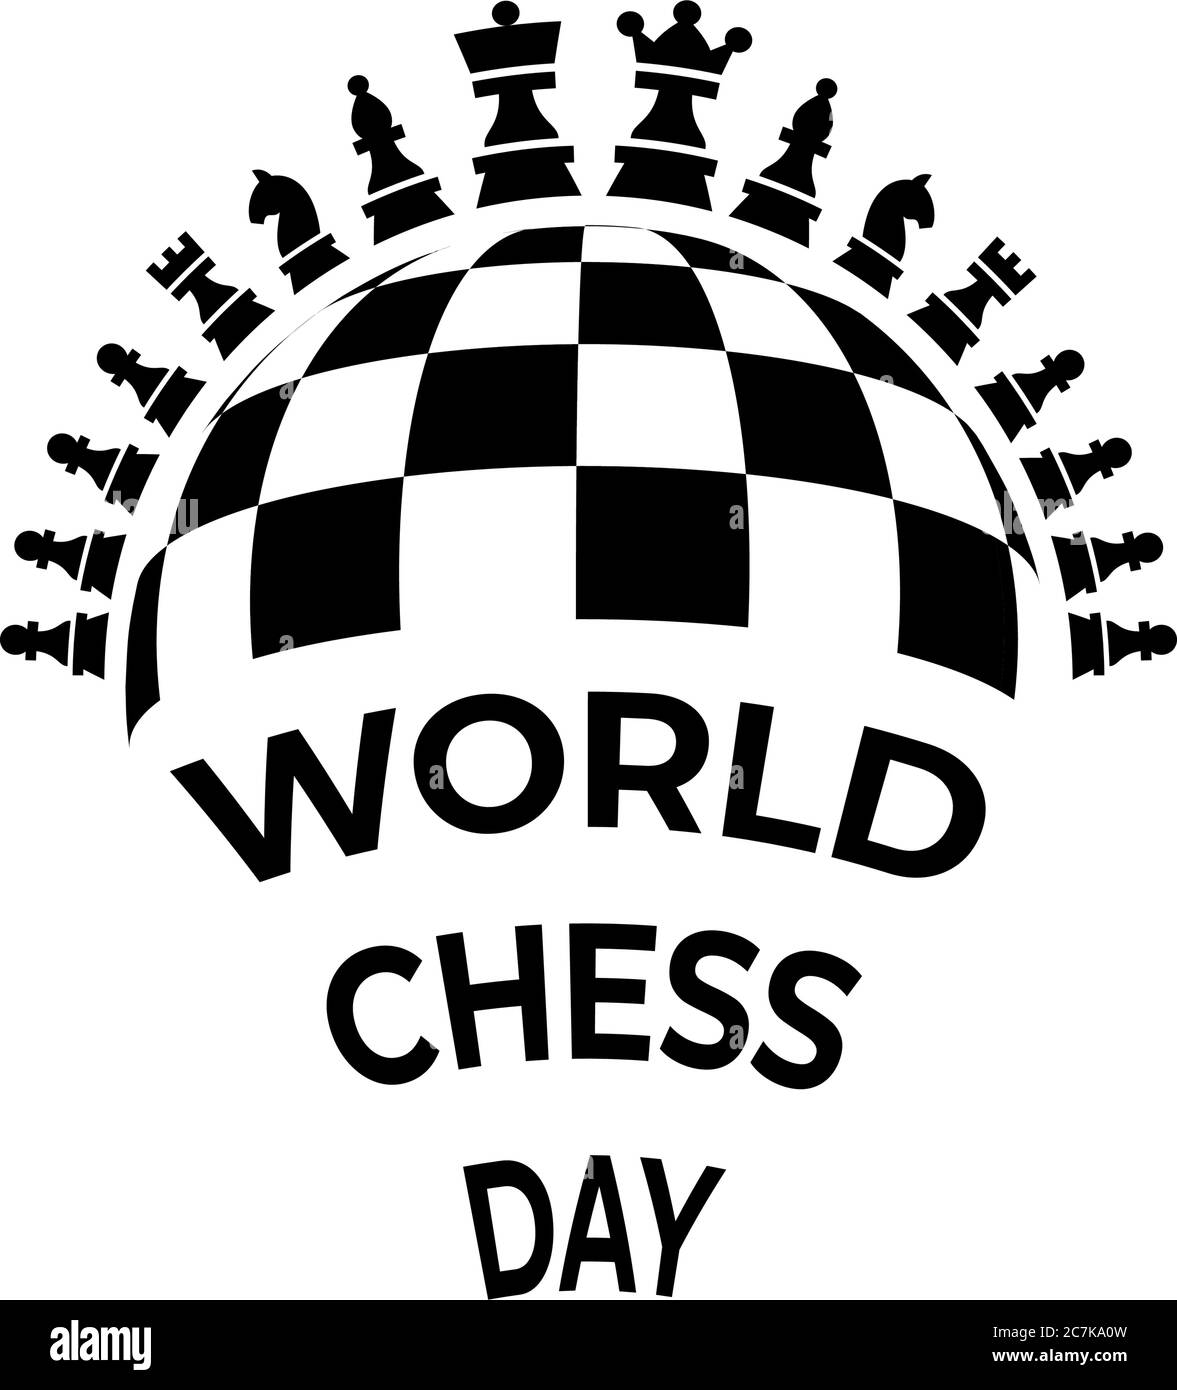 RISORSE INTERNET SCACCHI 11 - ChessBomb - Come Seguire i Tornei  Internazionali 